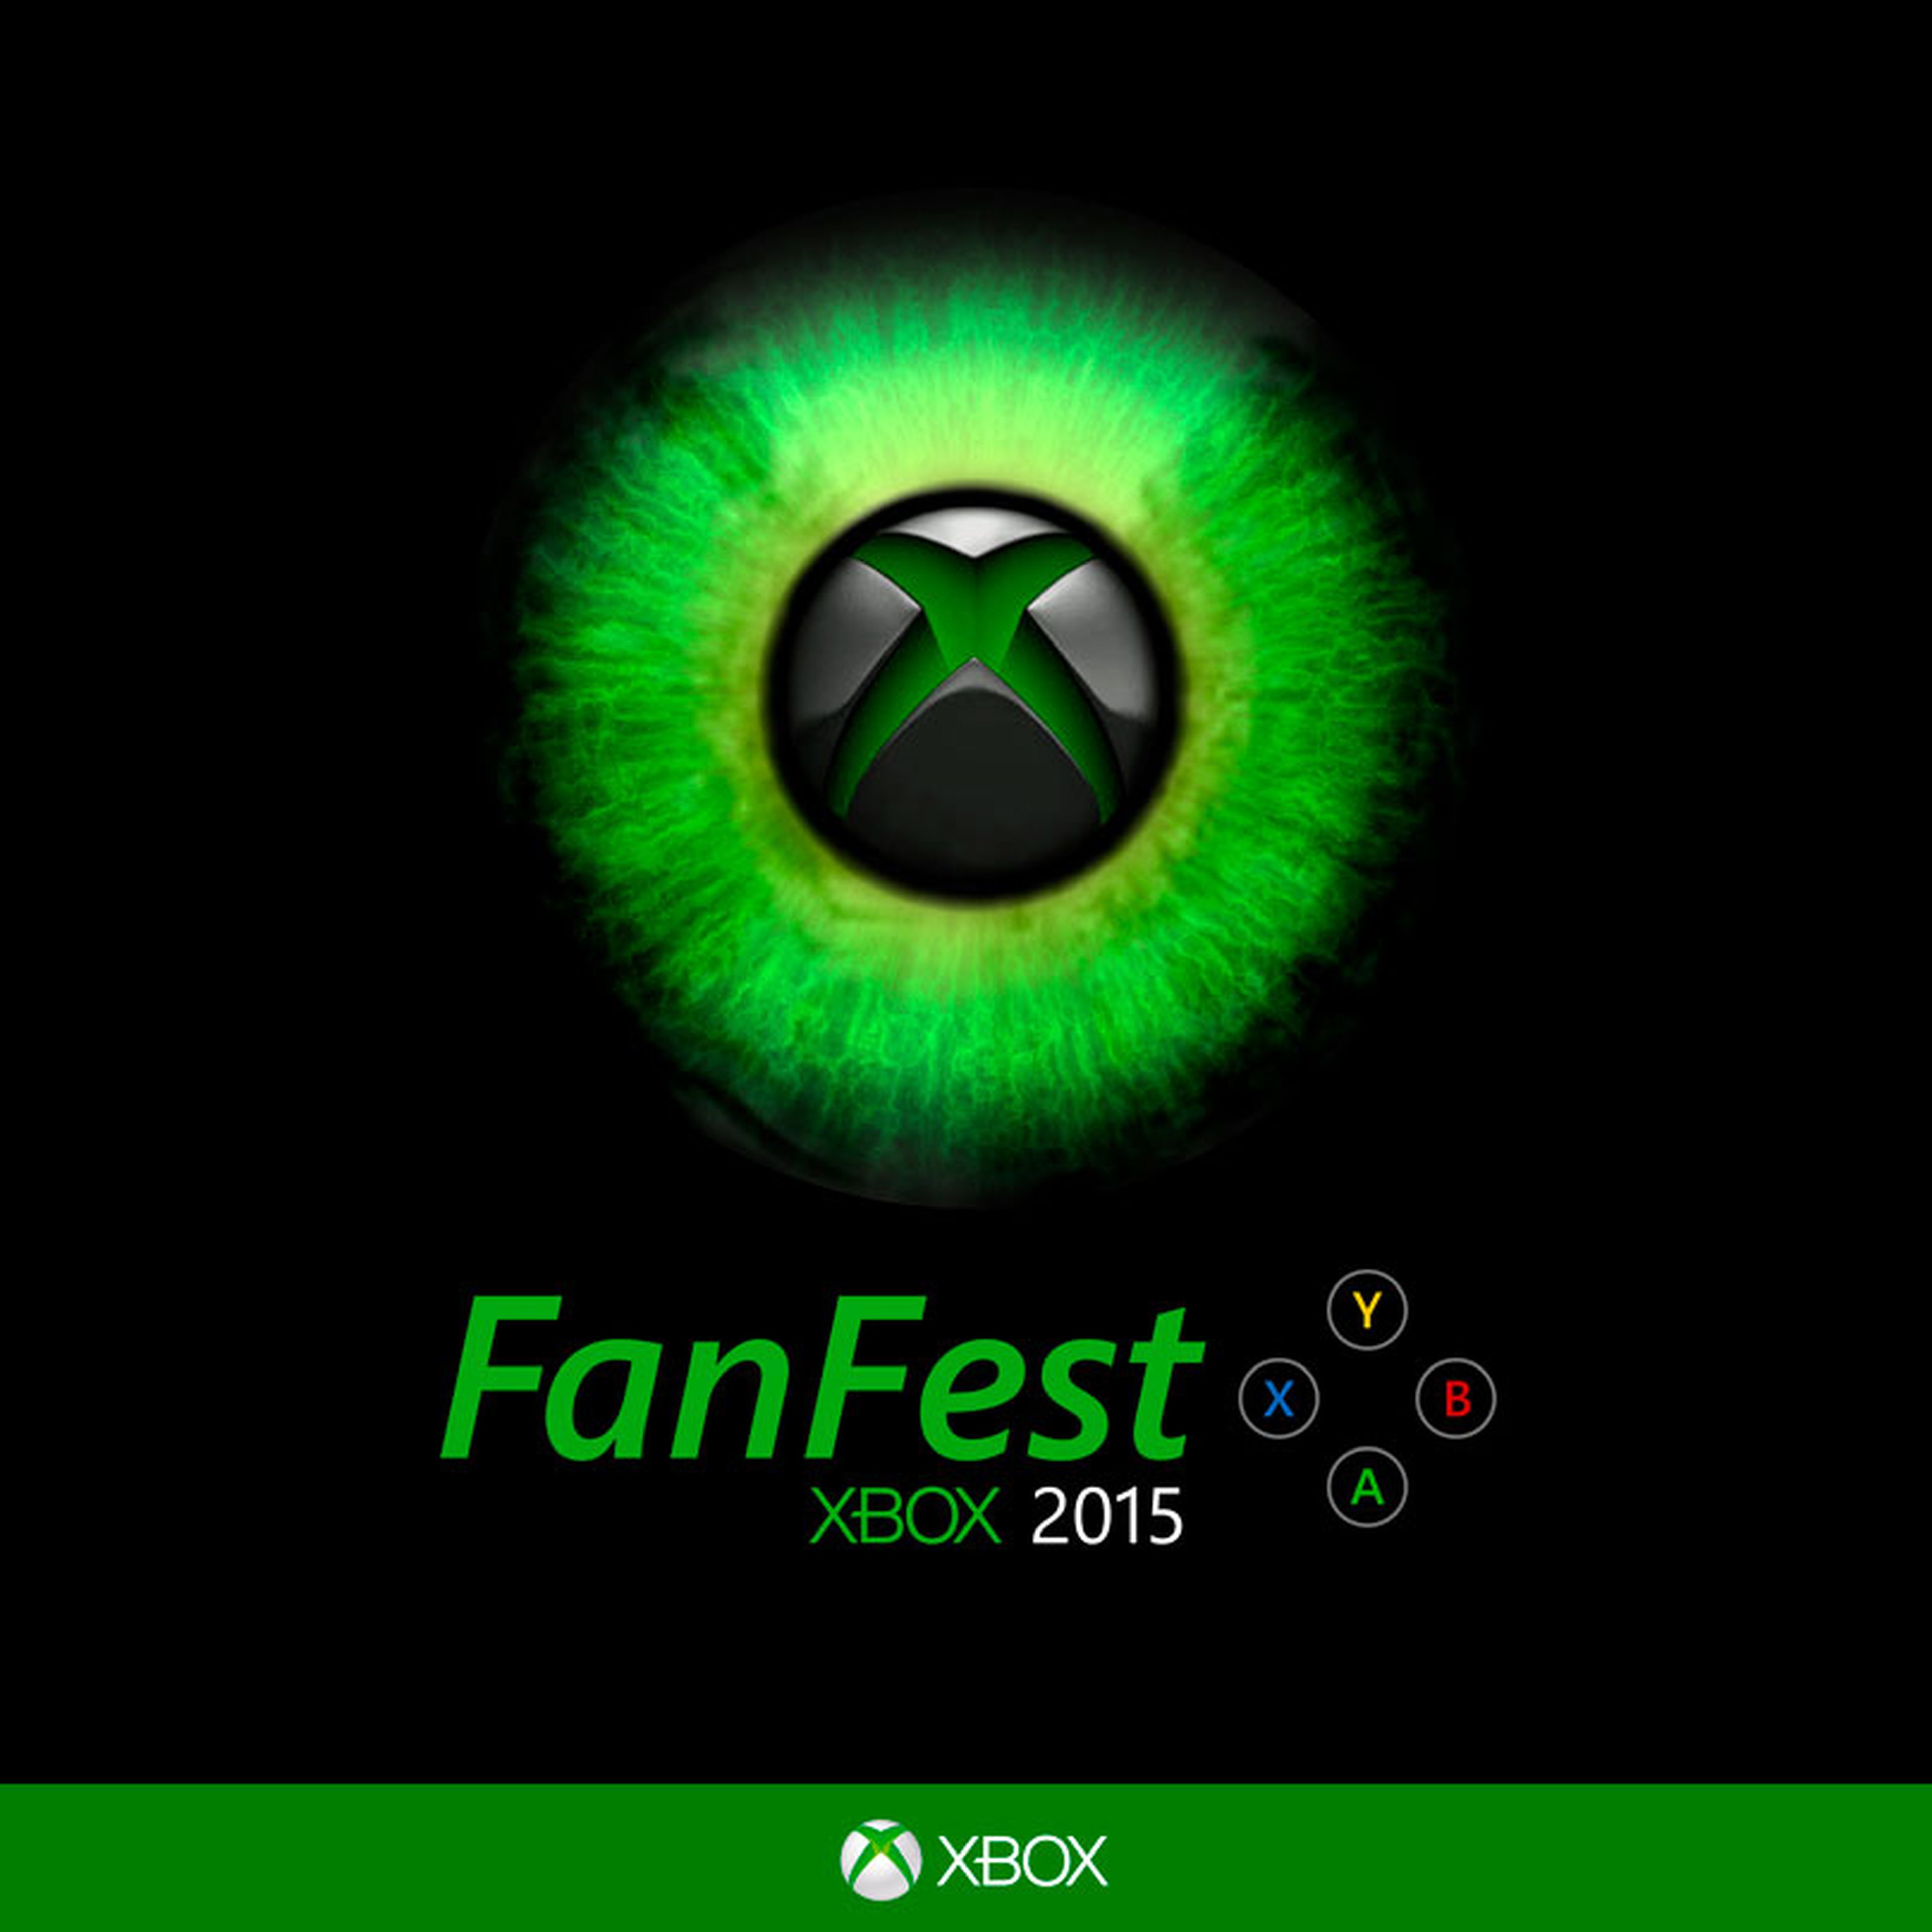 FanFest Xbox 2015 se celebrará del 30 de octubre al 1 de noviembre